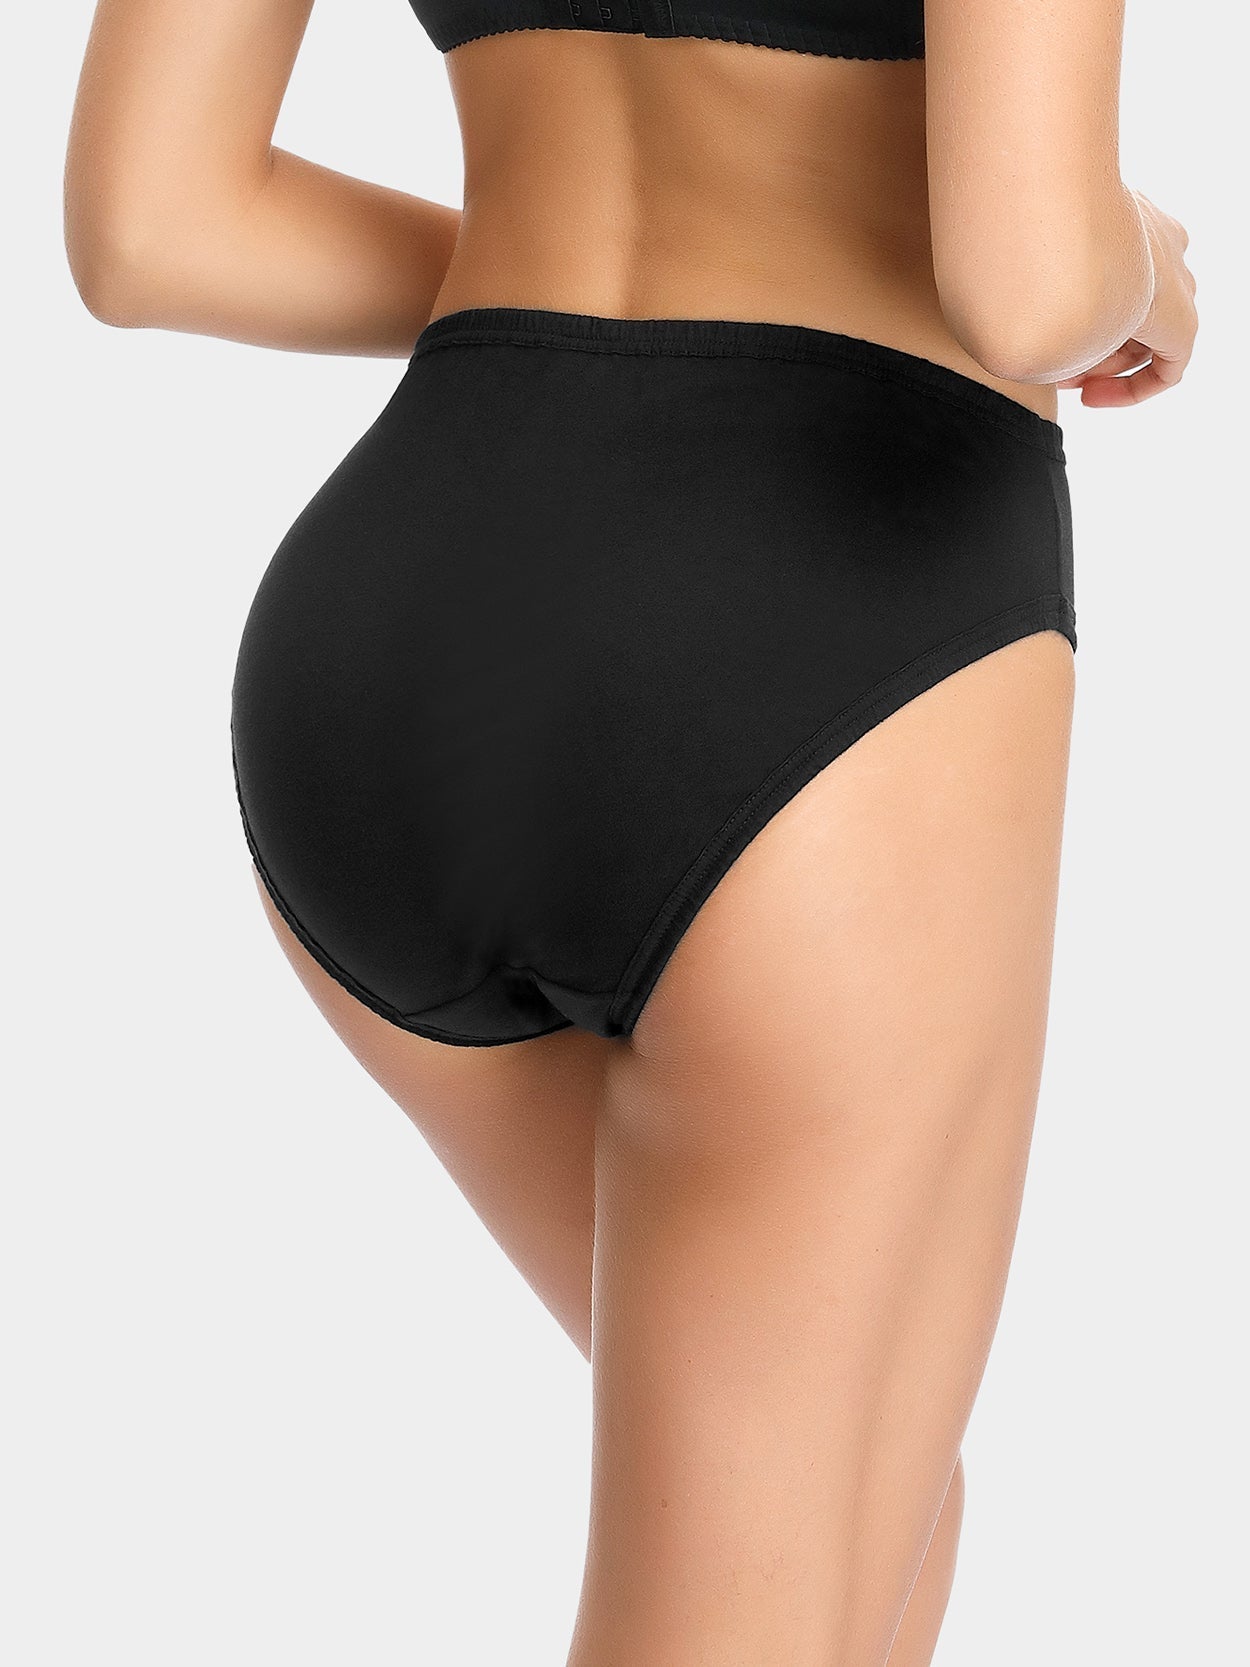 Wingslove 3 Pack Women's Plus Size Comfort Soft Cotton Underwear